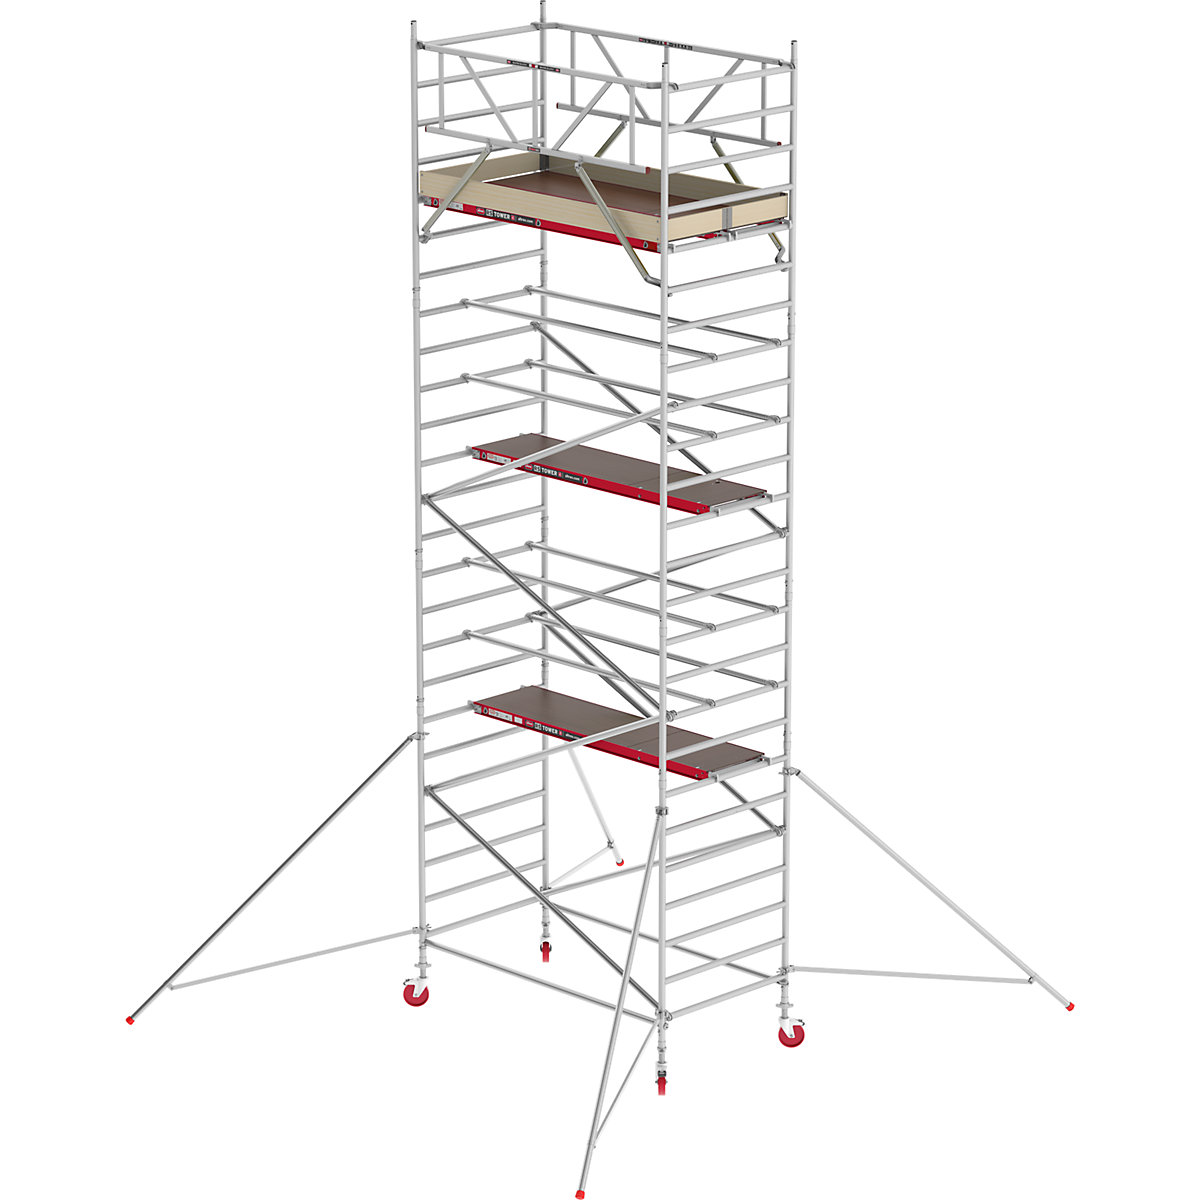 Schelă mobilă RS TOWER 42 lată – Altrex, platformă din lemn, lungime 2,45 m, înălțime de lucru 8,20 m-1